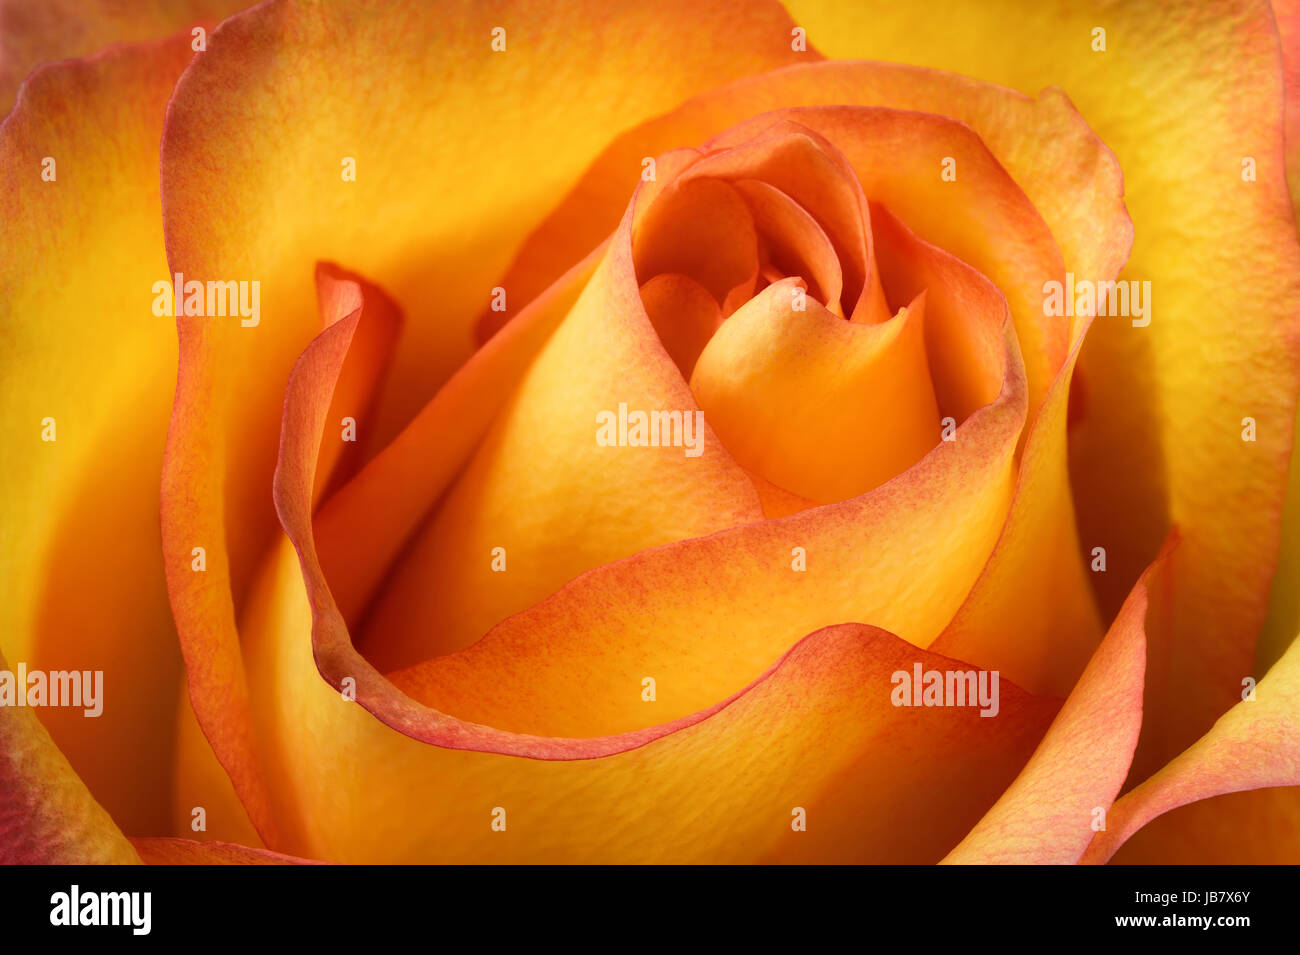 Enger Ausschnitt einer orangefarbenen Rose, Studioaufnahme Stock Photo